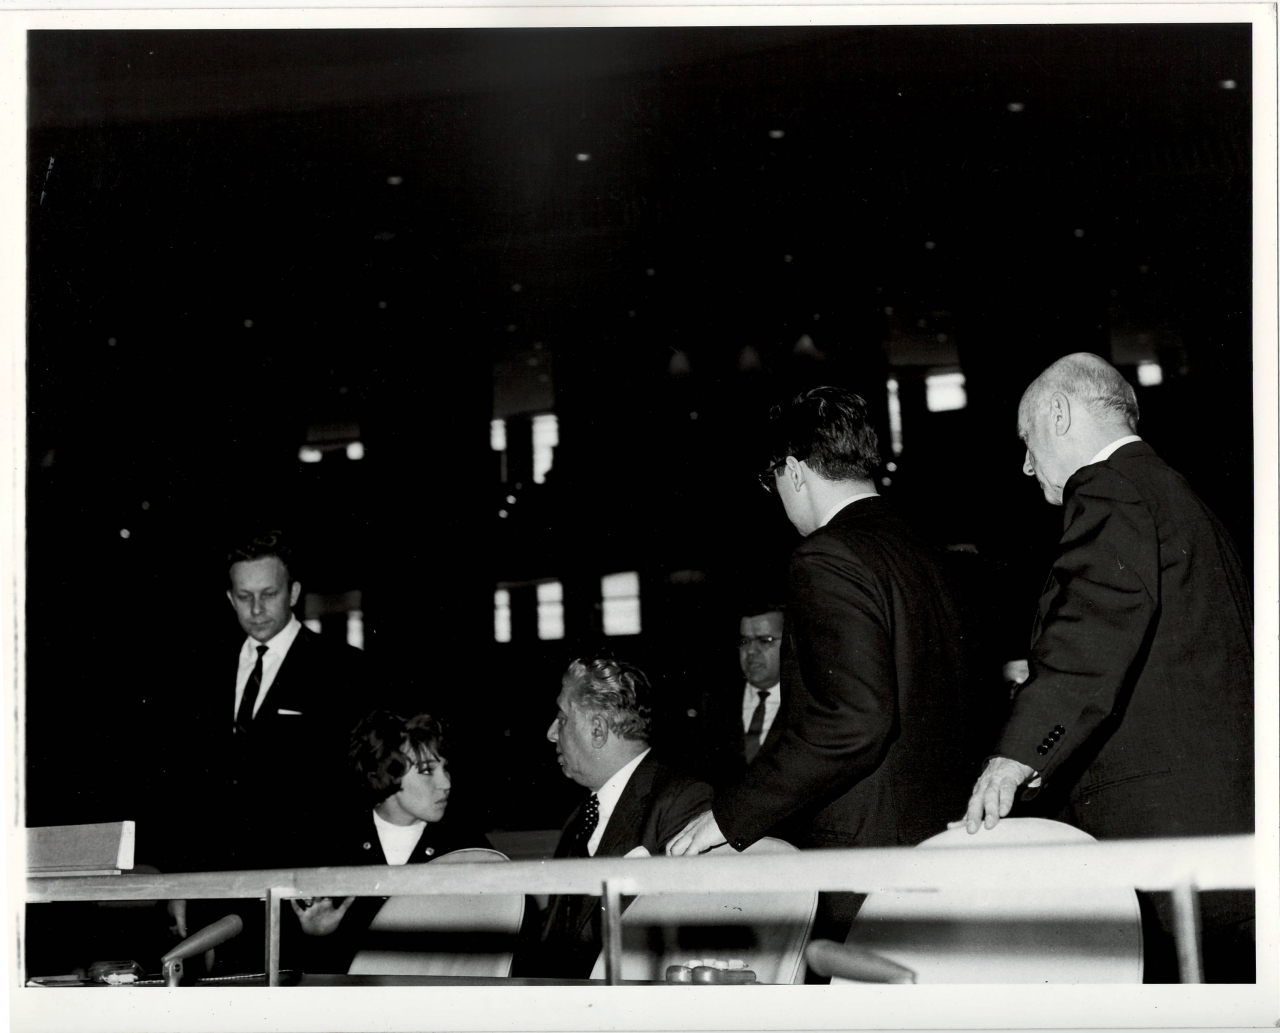 Լուսանկար. Ա. Խաչատրյանը որդու՝ Կարենի, ՄԱԿ-ին առընթեր սովետական ներկայացուցչության 3-րդ քարտուղար Վ. Իվանովի ,ՄԱԿ- ի գիդ-թարգմանչուհի Ջ. Յադրոշնիկովայի հետ ՄԱԿ-ի նիստերի դահլիճում